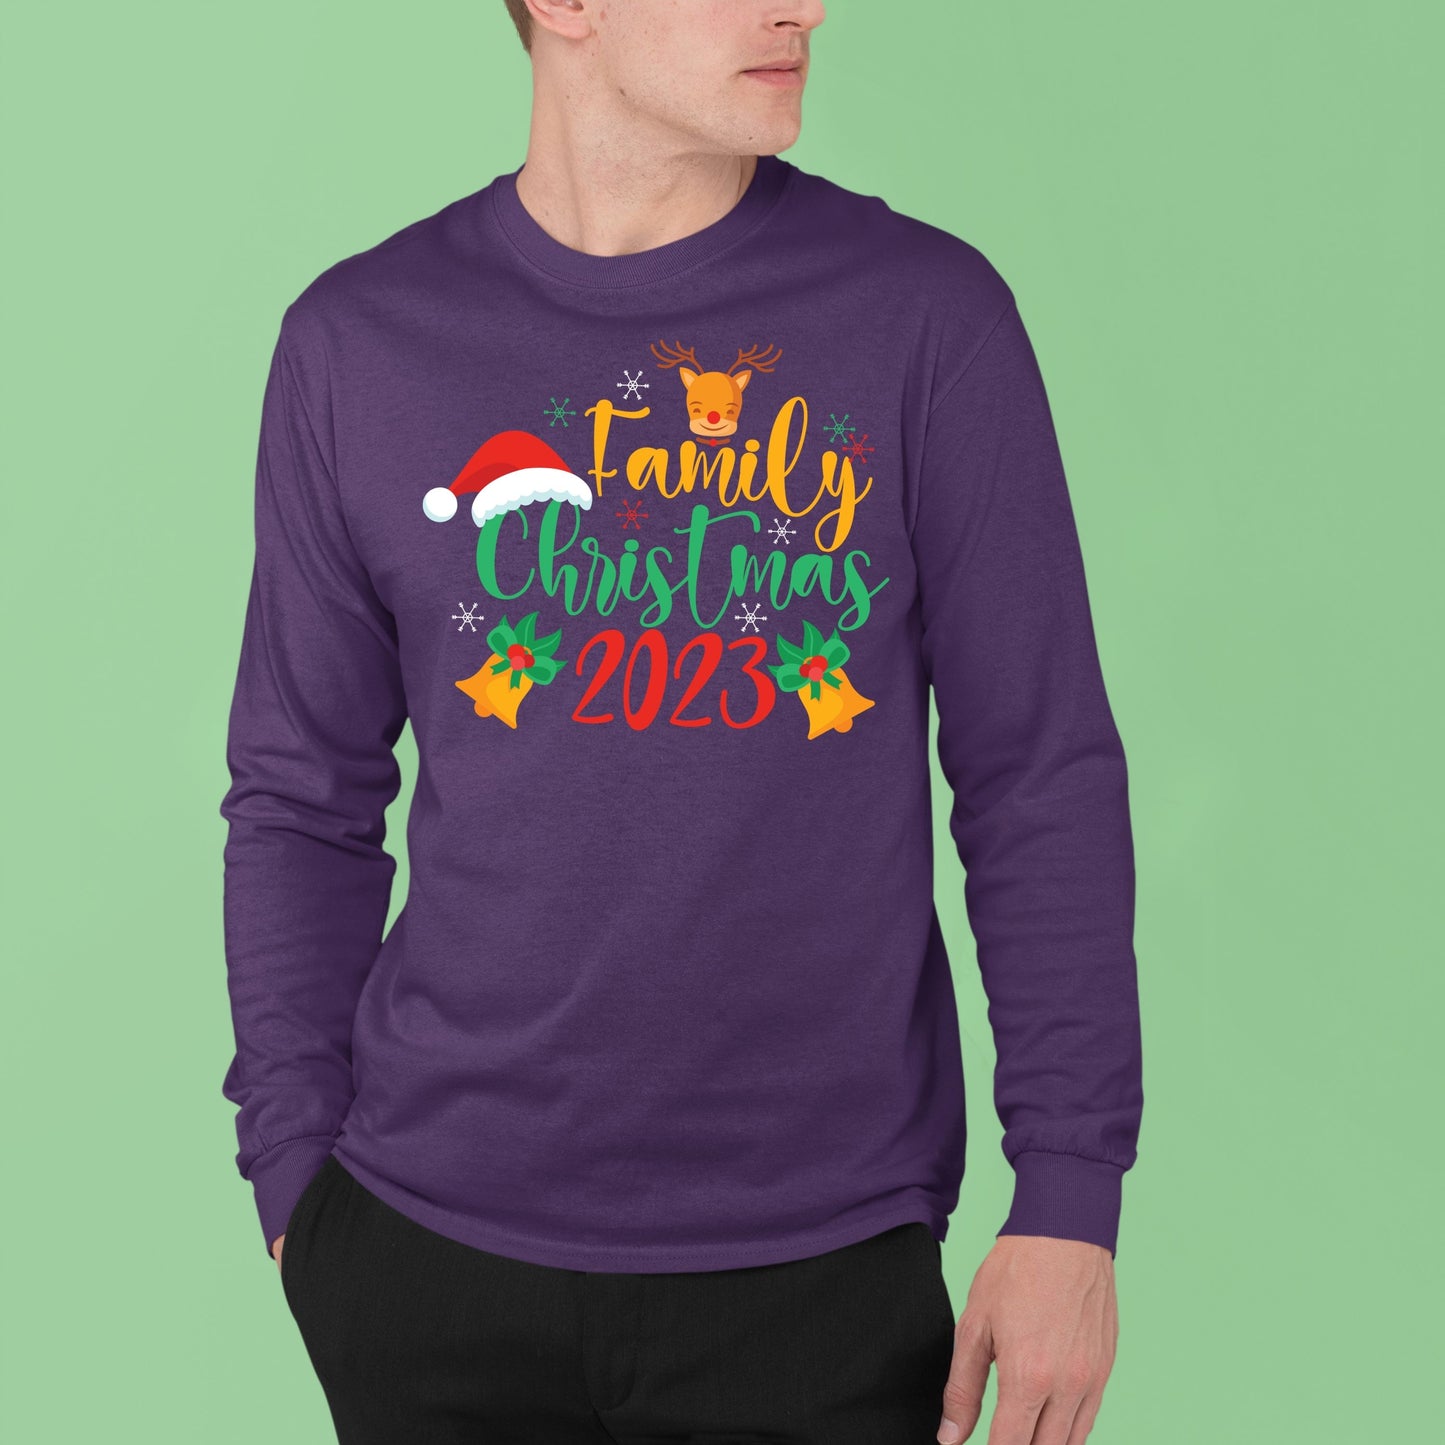 Family Christmas 2023, Christmas Long Sleeves, Christmas Crewneck For Men, Christmas Sweatshirt, Christmas Sweater, Christmas Present